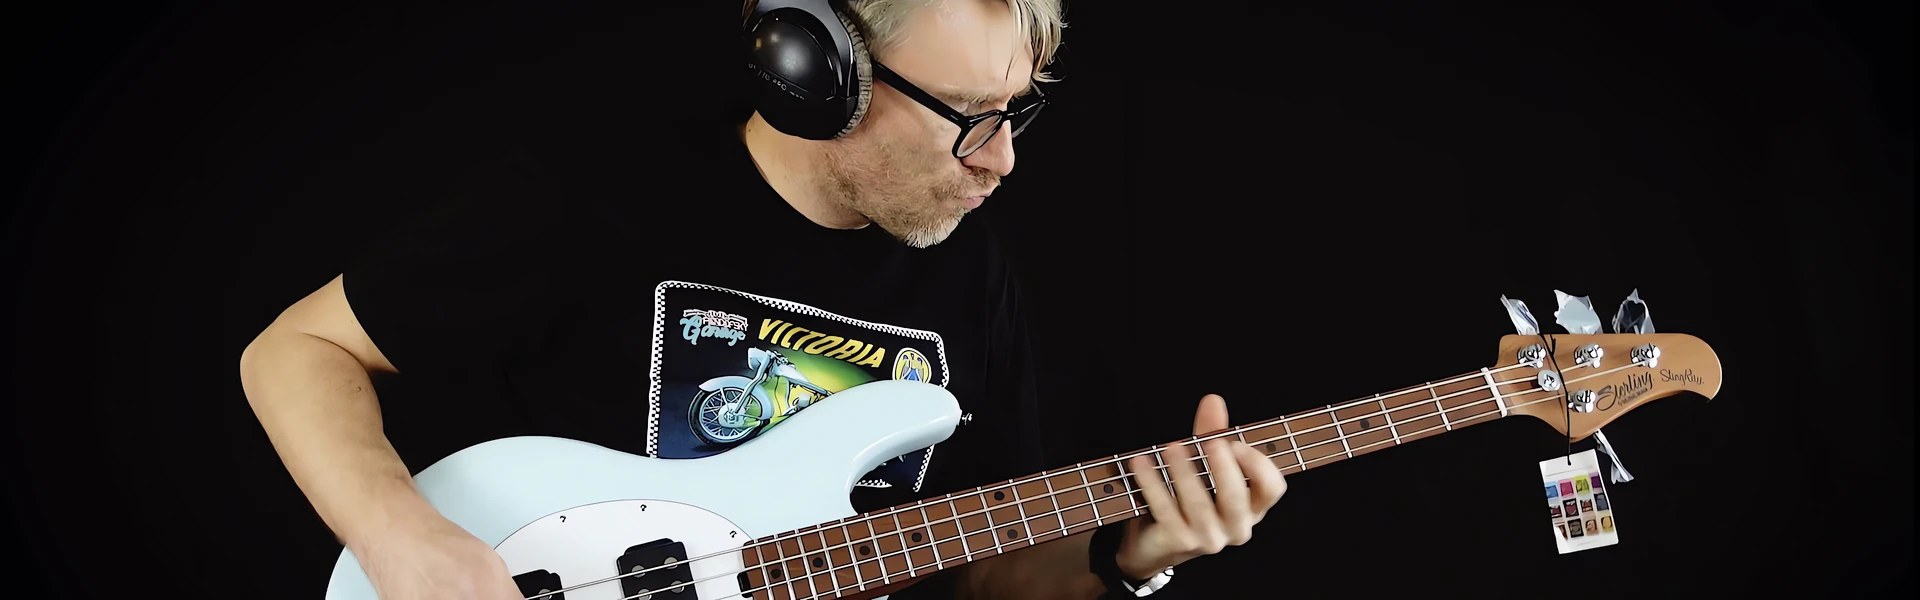 VIDEO TEST: Wyjątkowa gitara basowa Sterling Stingray Ray 34 HH